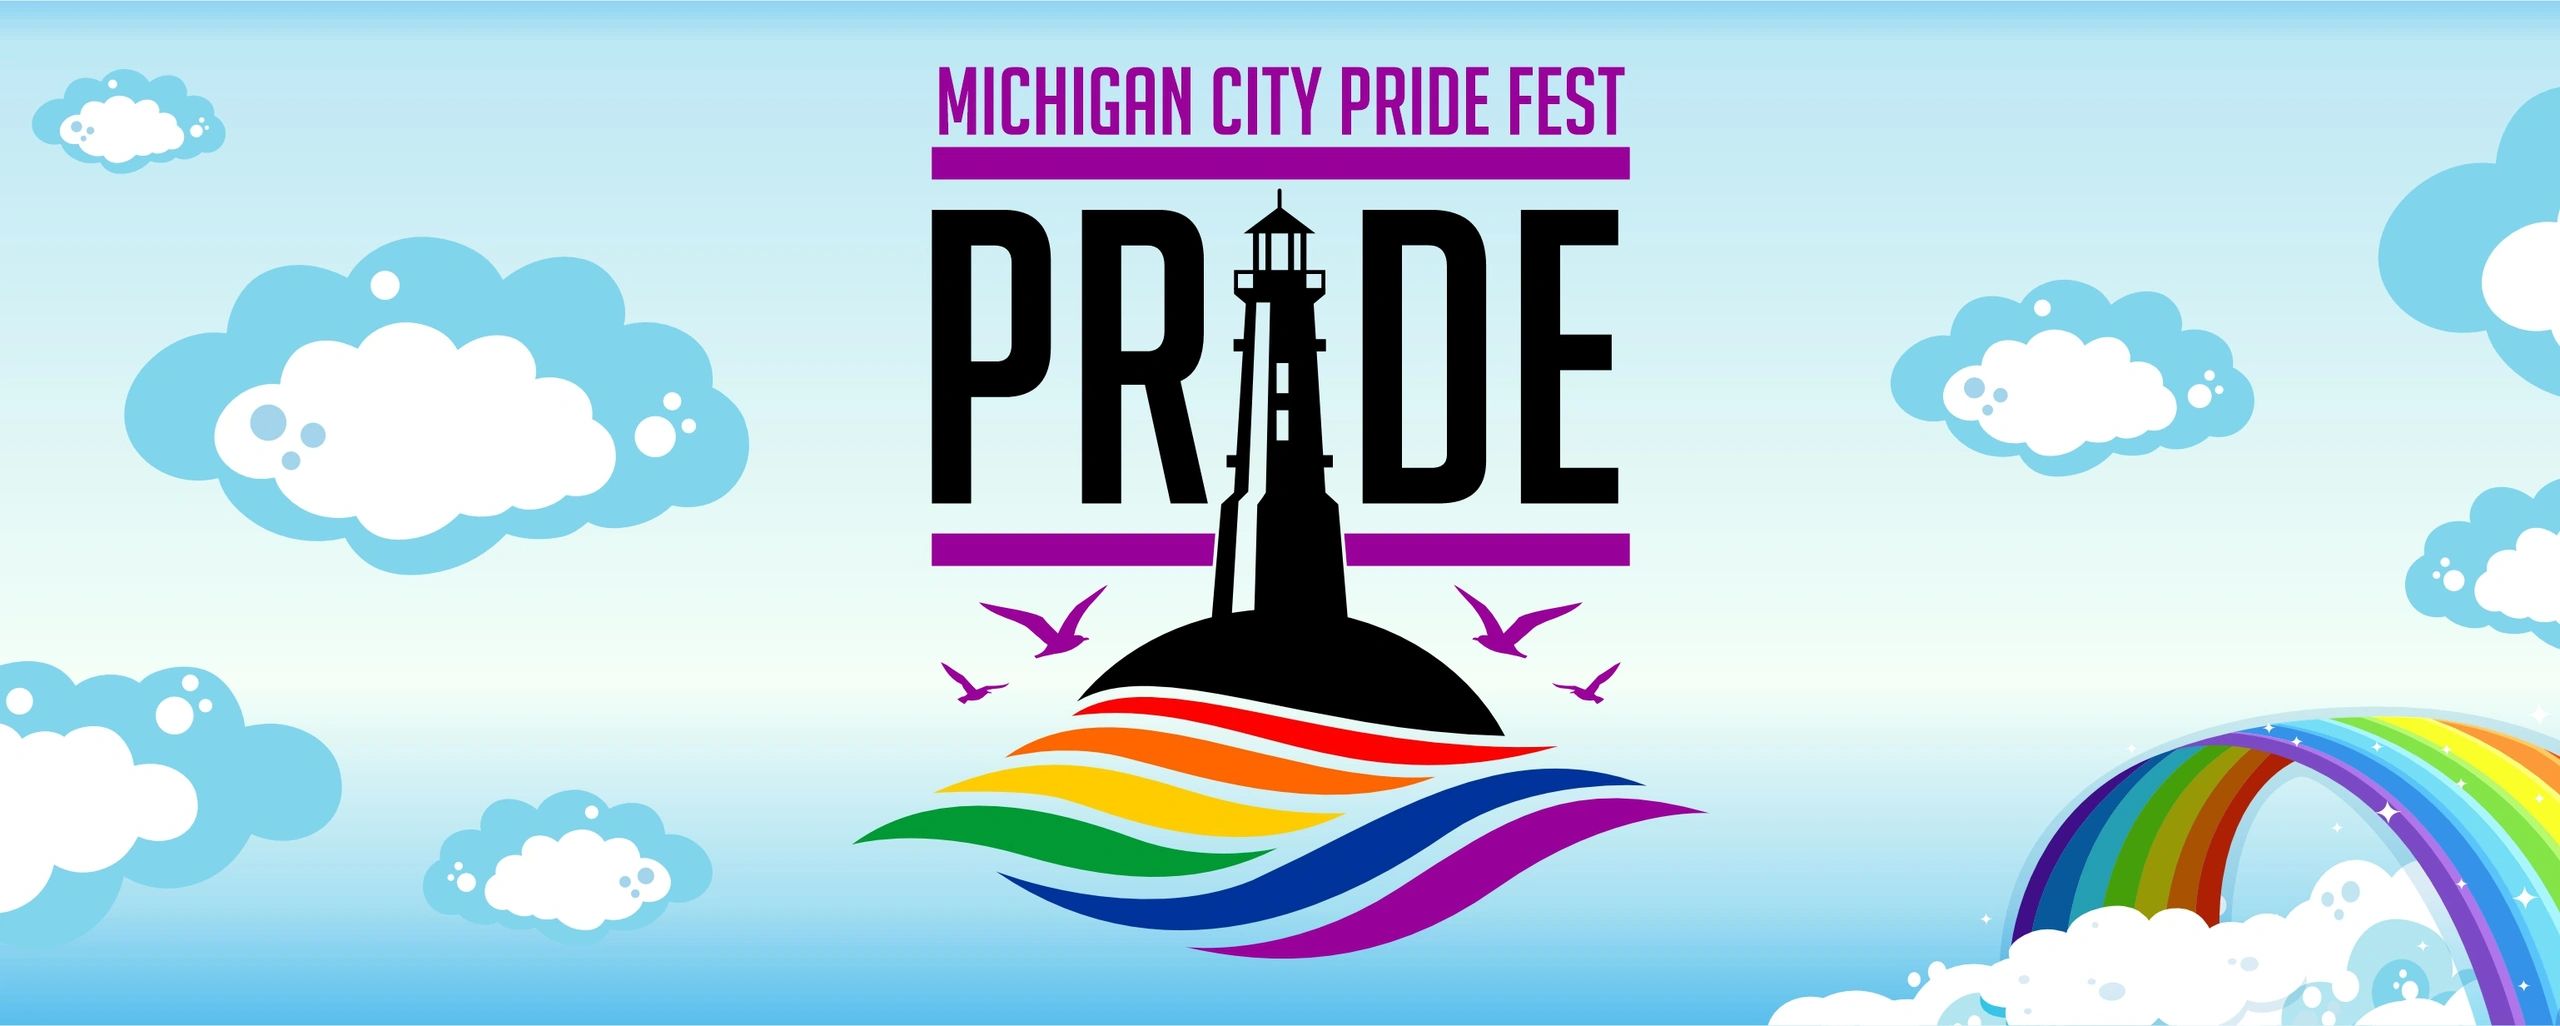 Michigan City Pride